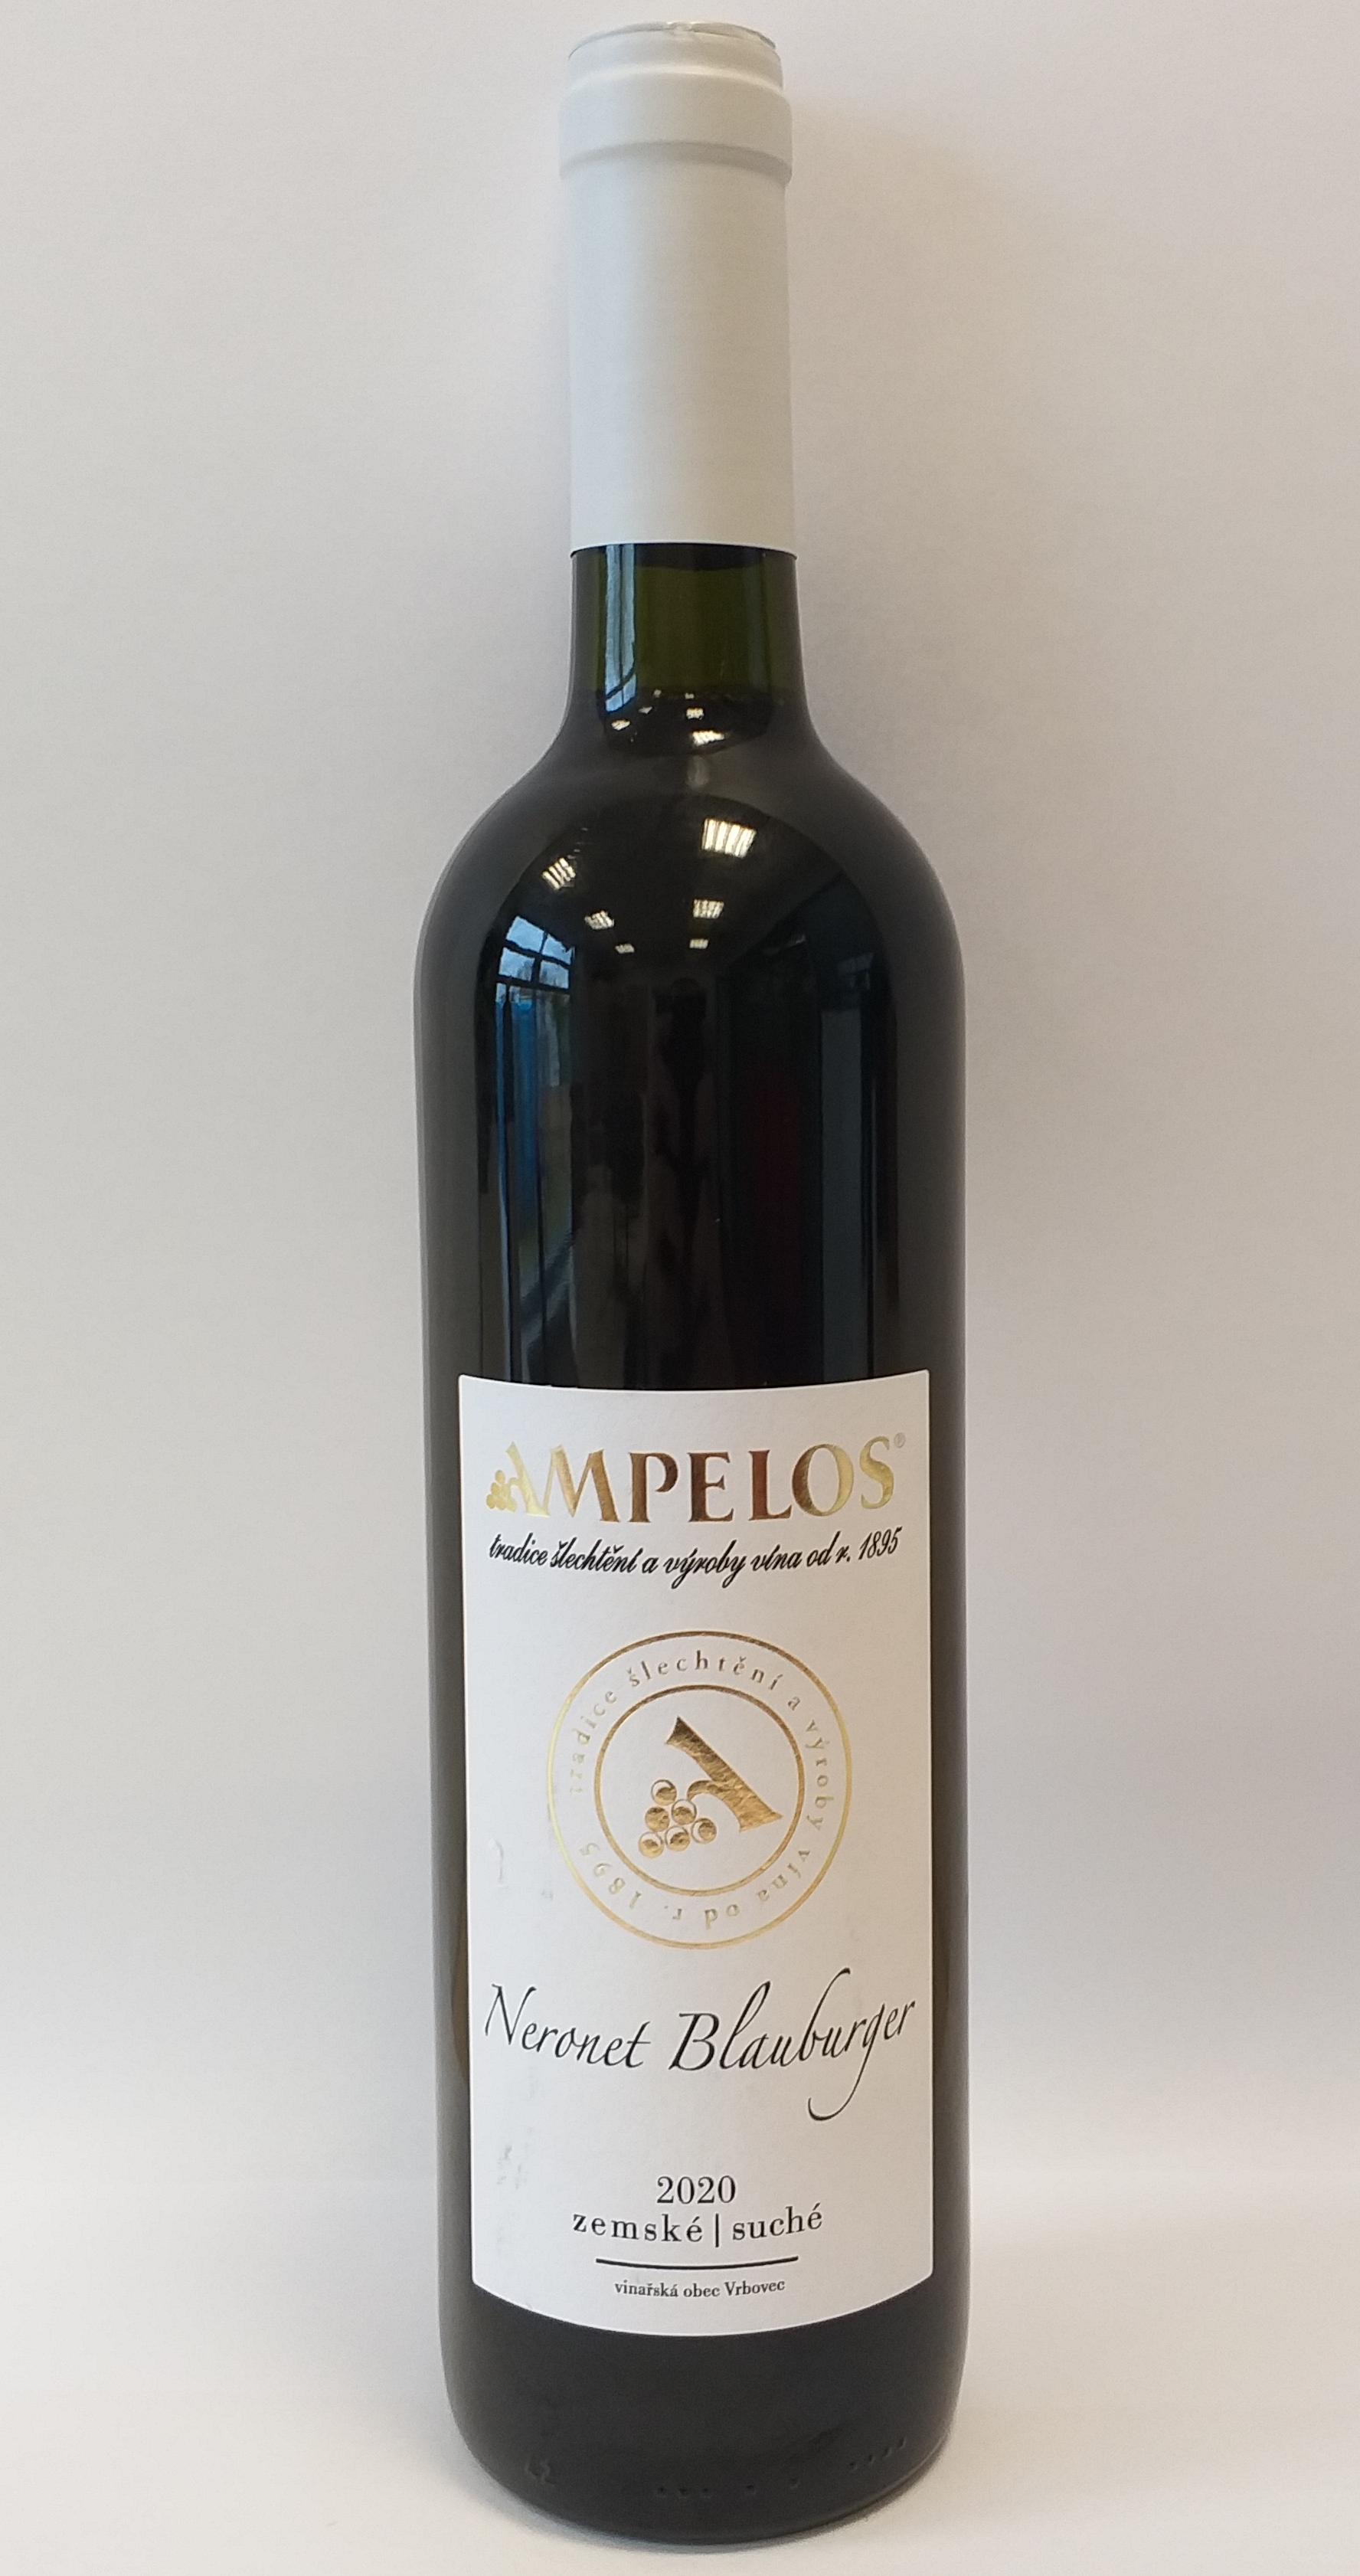 Víno červené Neronet Blauburger zemské 2020 Ampelos (tiché víno) 0,75l